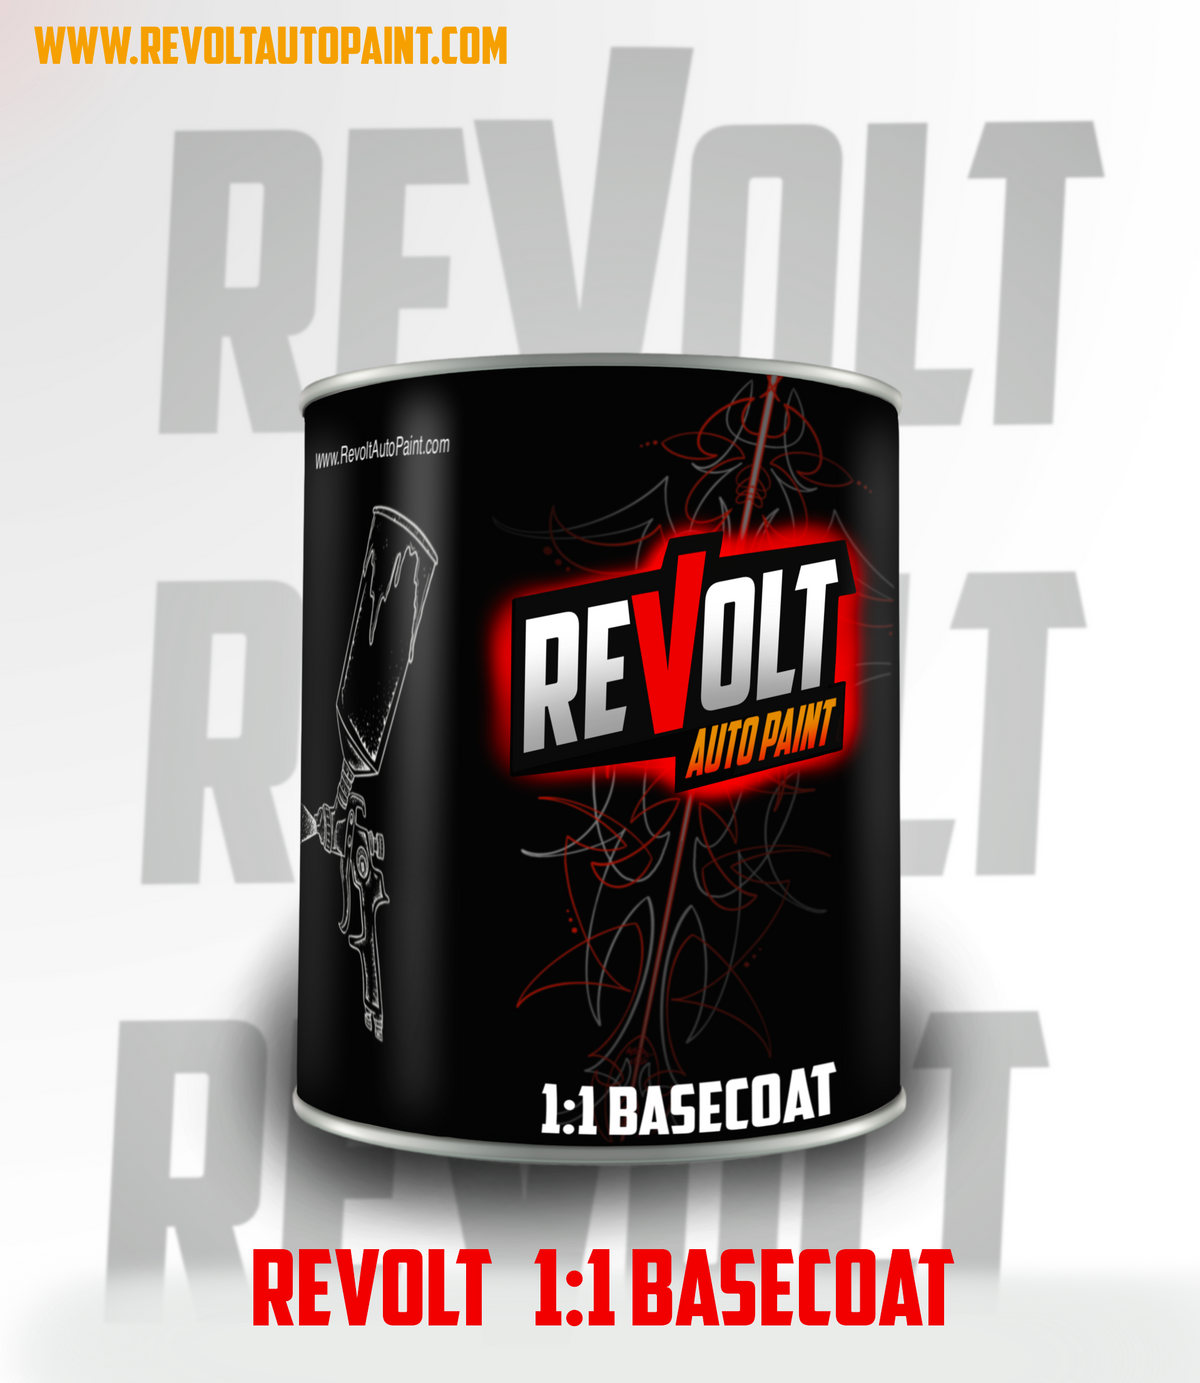 Revolt Basecoat's